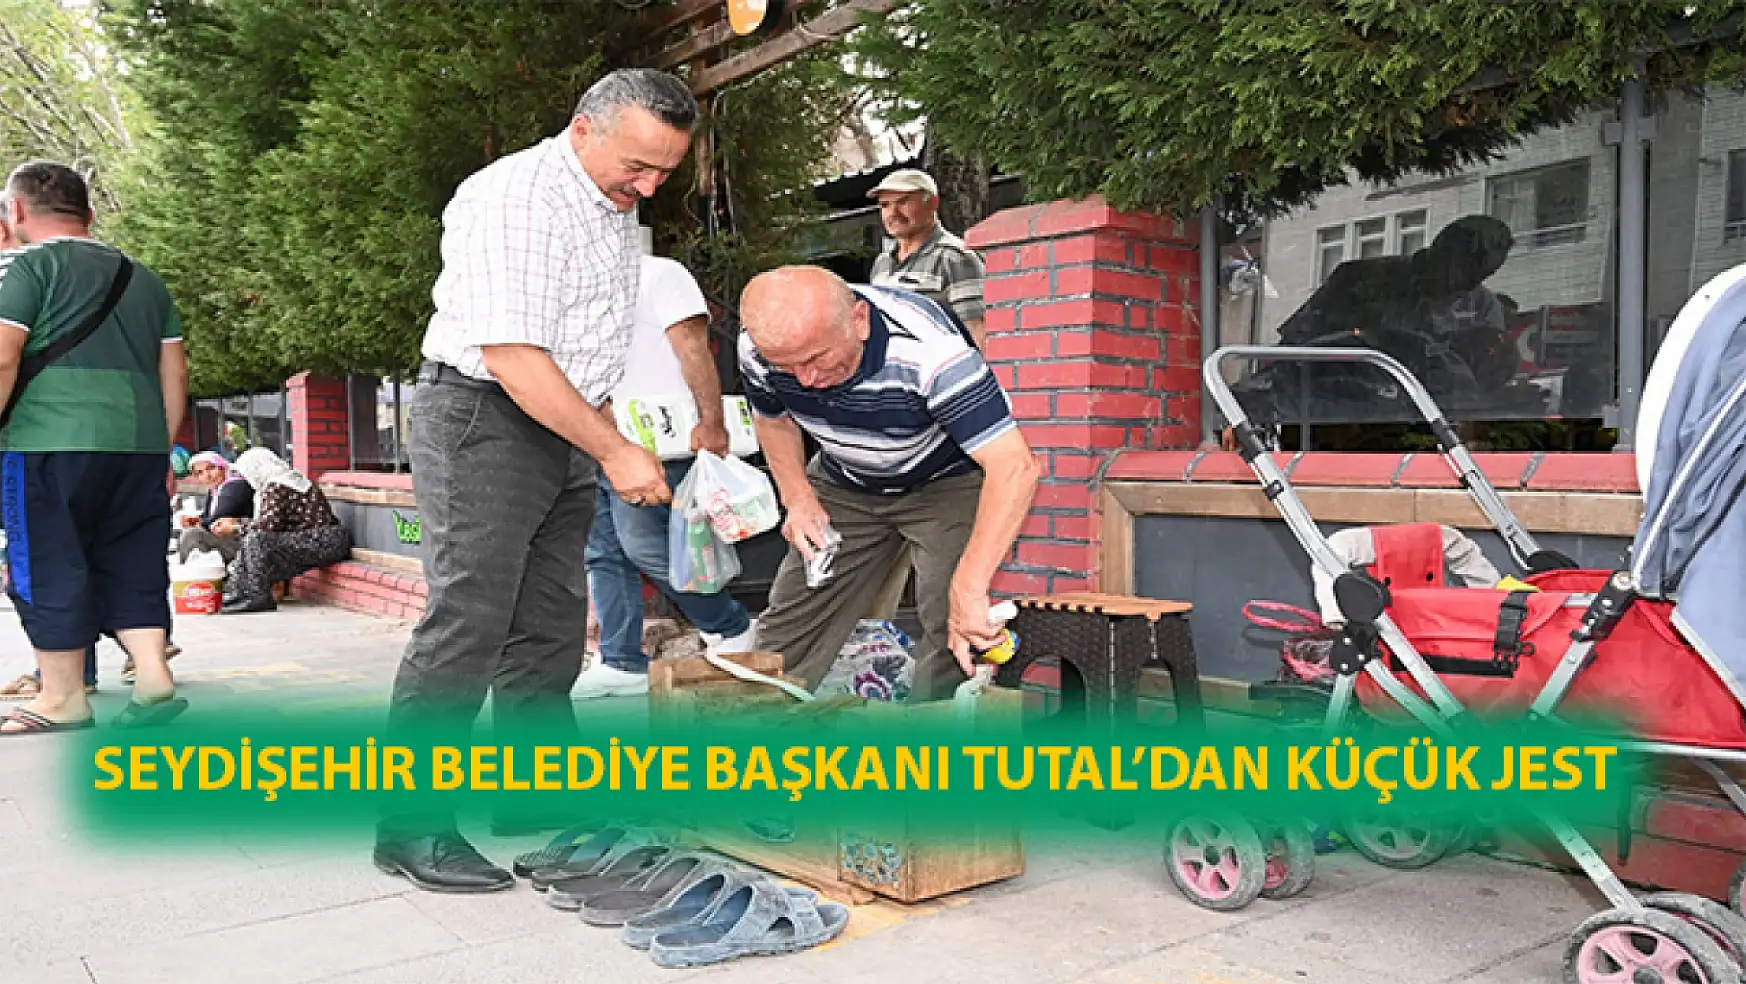 Seydişehir Belediye Başkanı Tutal'dan küçük jest